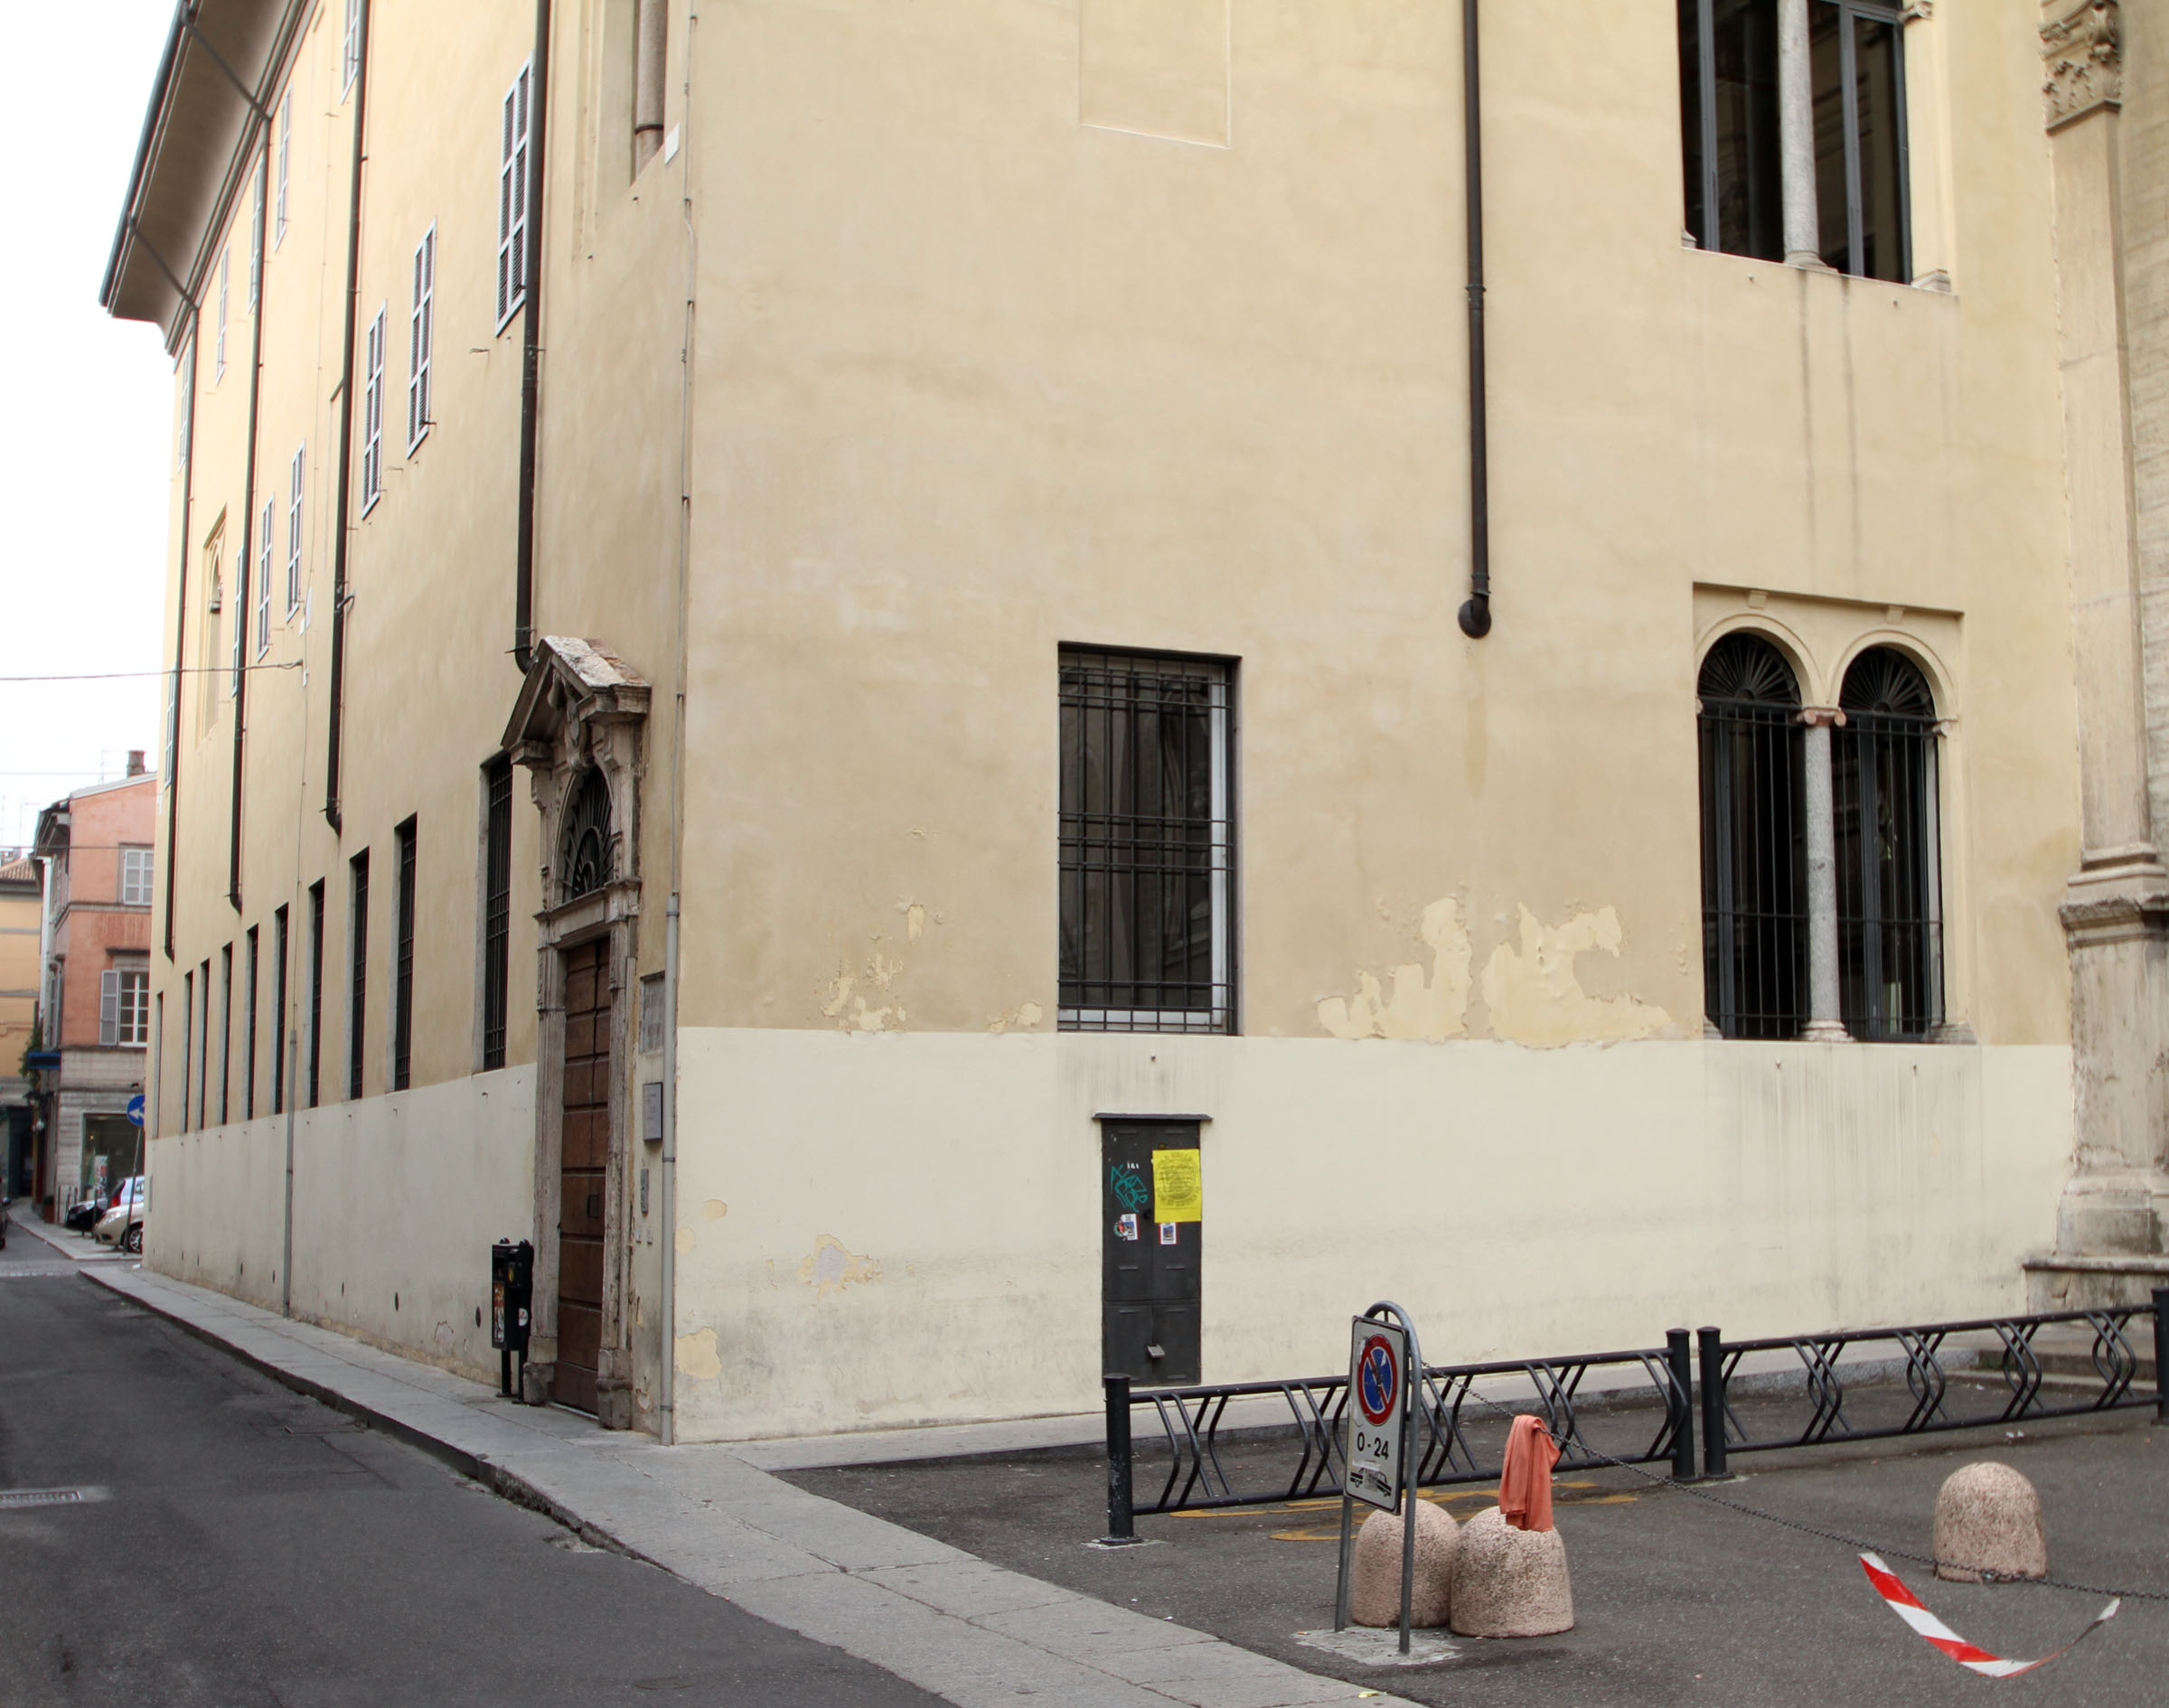 photo: https://upload.wikimedia.org/wikipedia/commons/1/1a/001896_palazzo_del_collegio_dei_gesuiti.JPG